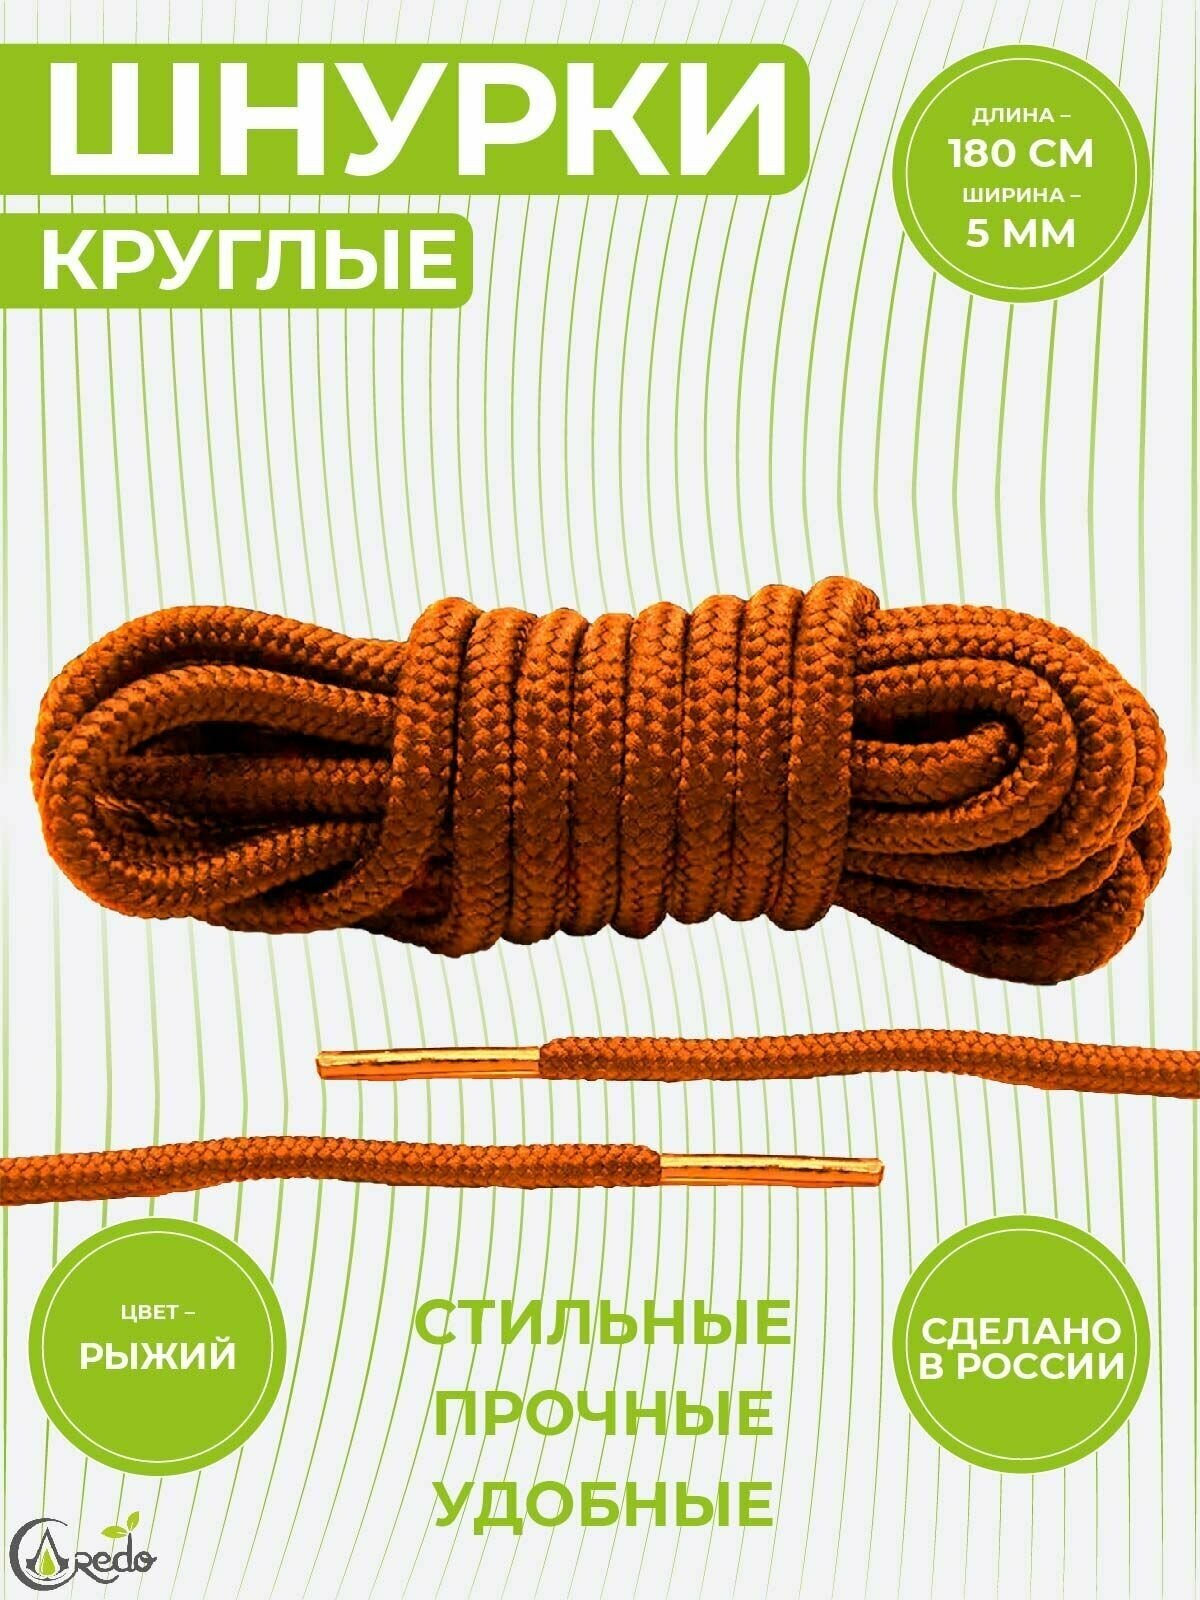 Шнурки для берцев и другой обуви, длина 180 сантиметров, диаметр 5 мм. Сделаны в России. Рыжие